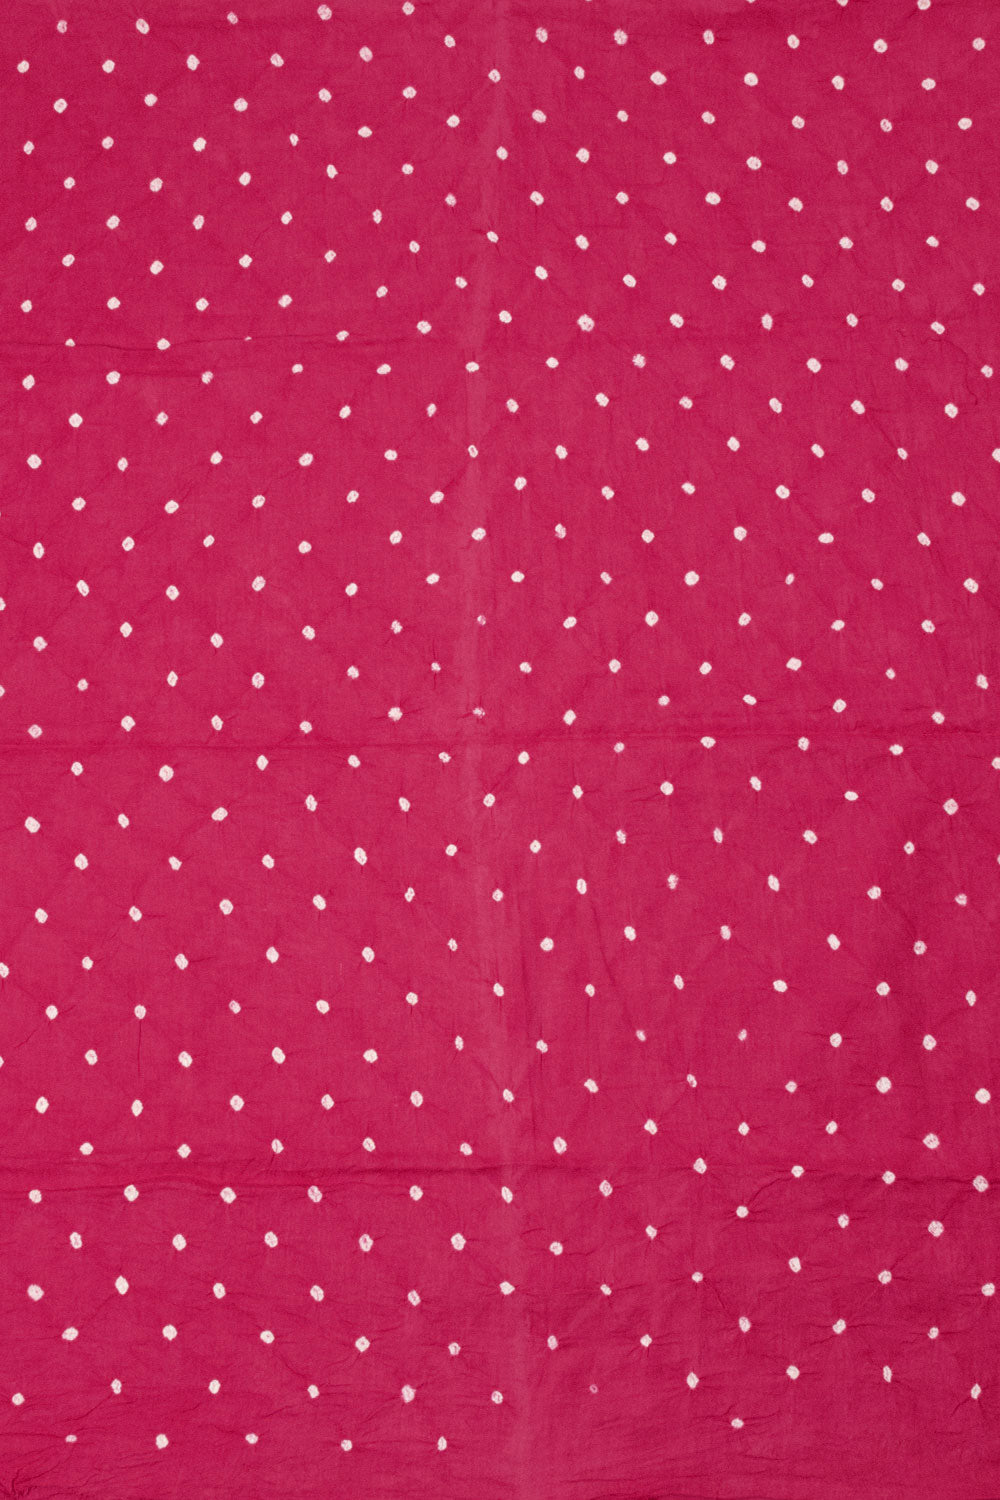 Pink Bandhani Cotton 3-Piece Salwar Suit Material - Avishya